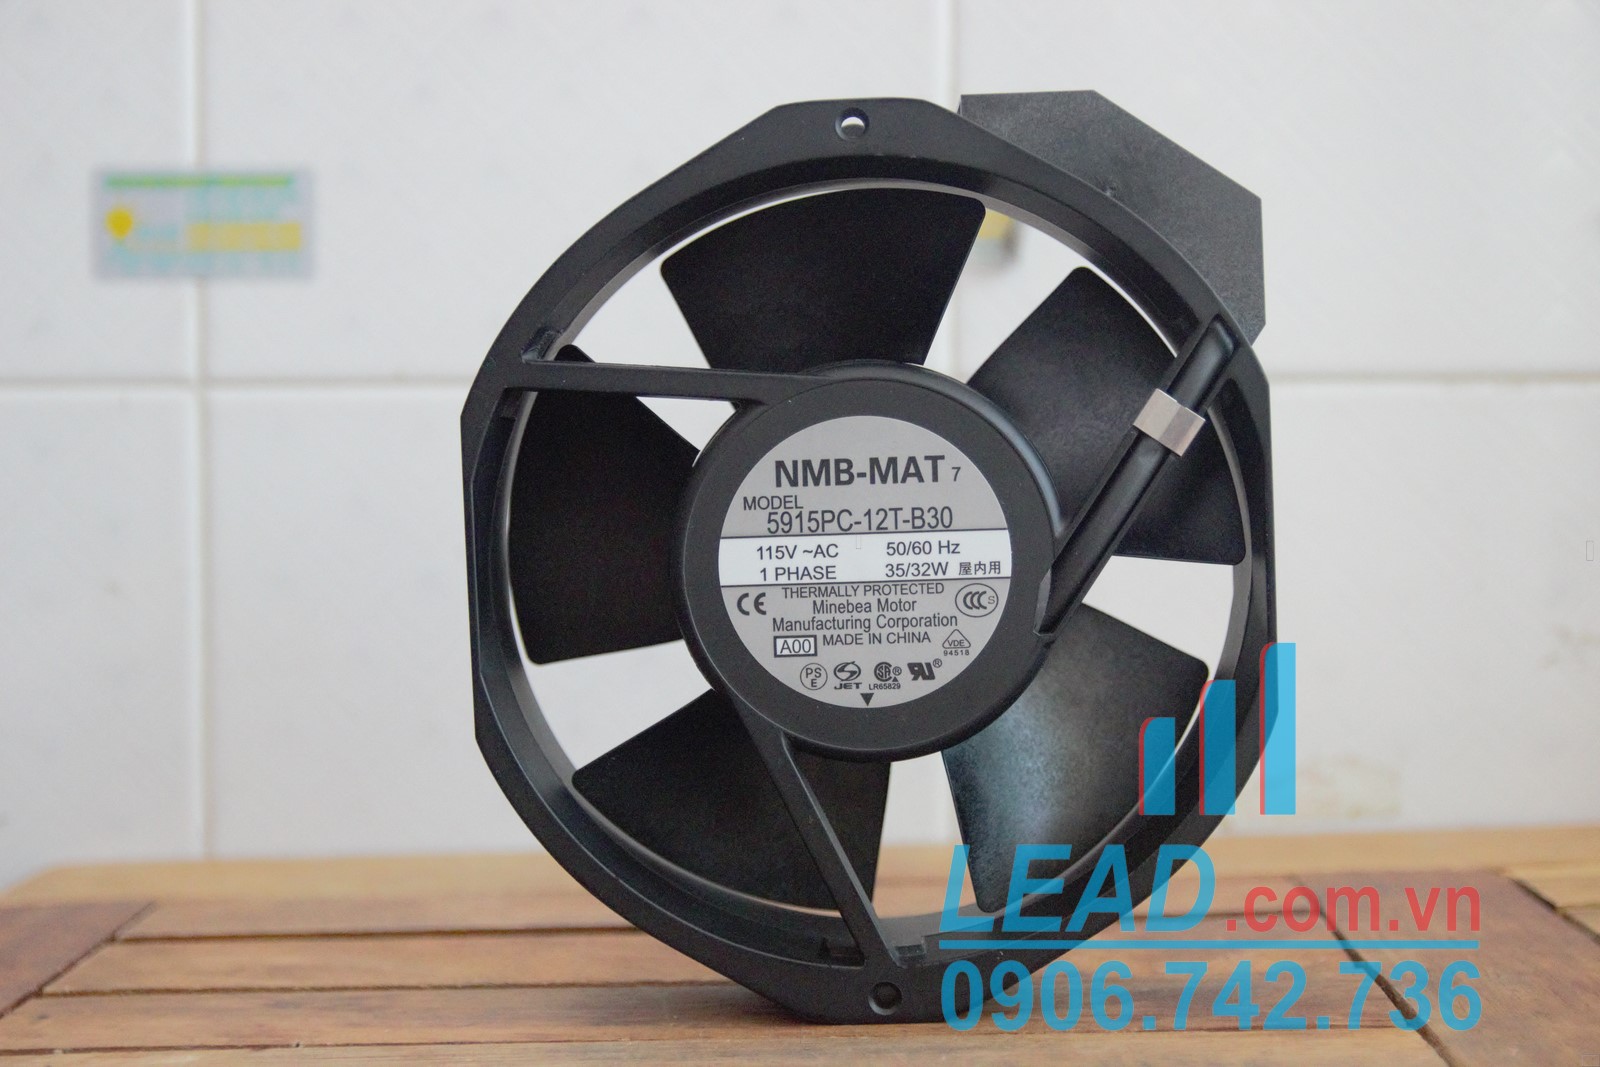 Quạt hút NMB-MAT 5915PC-12T-B30, 115VAC, 172x150x38mm